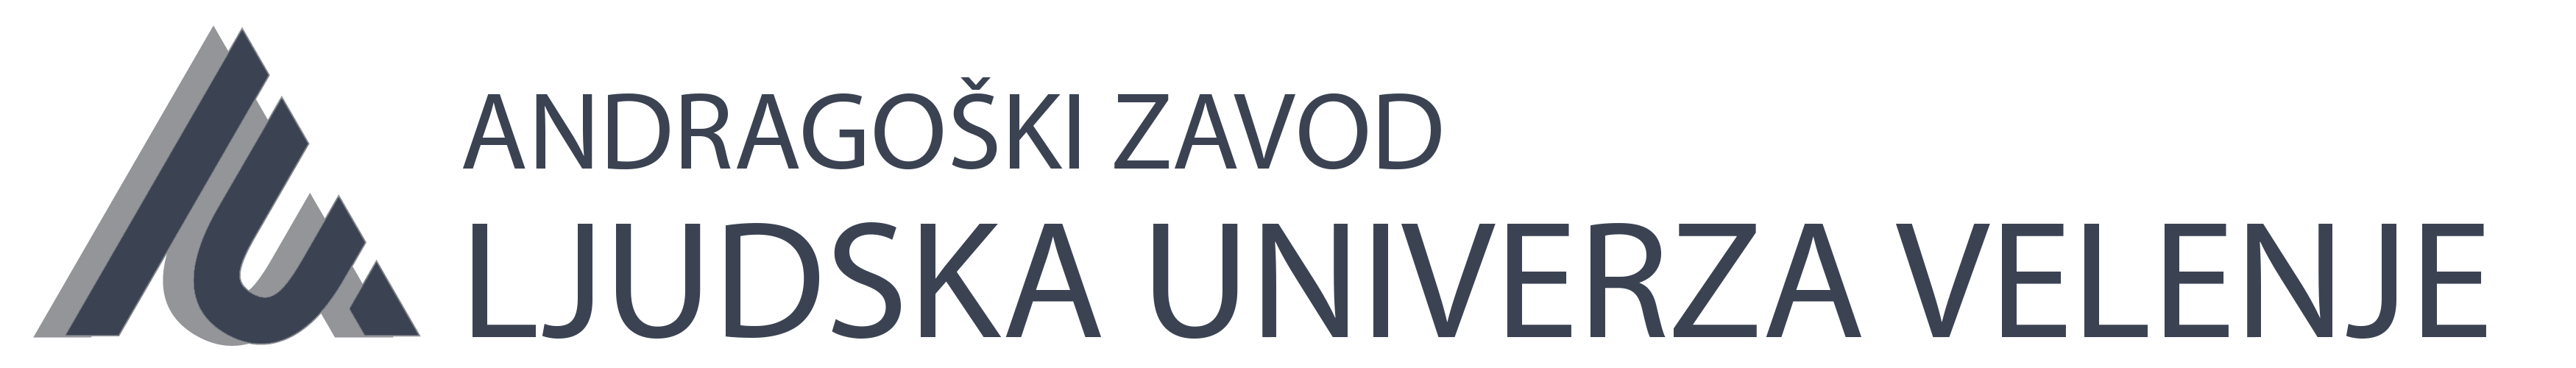 LUV Logo grau